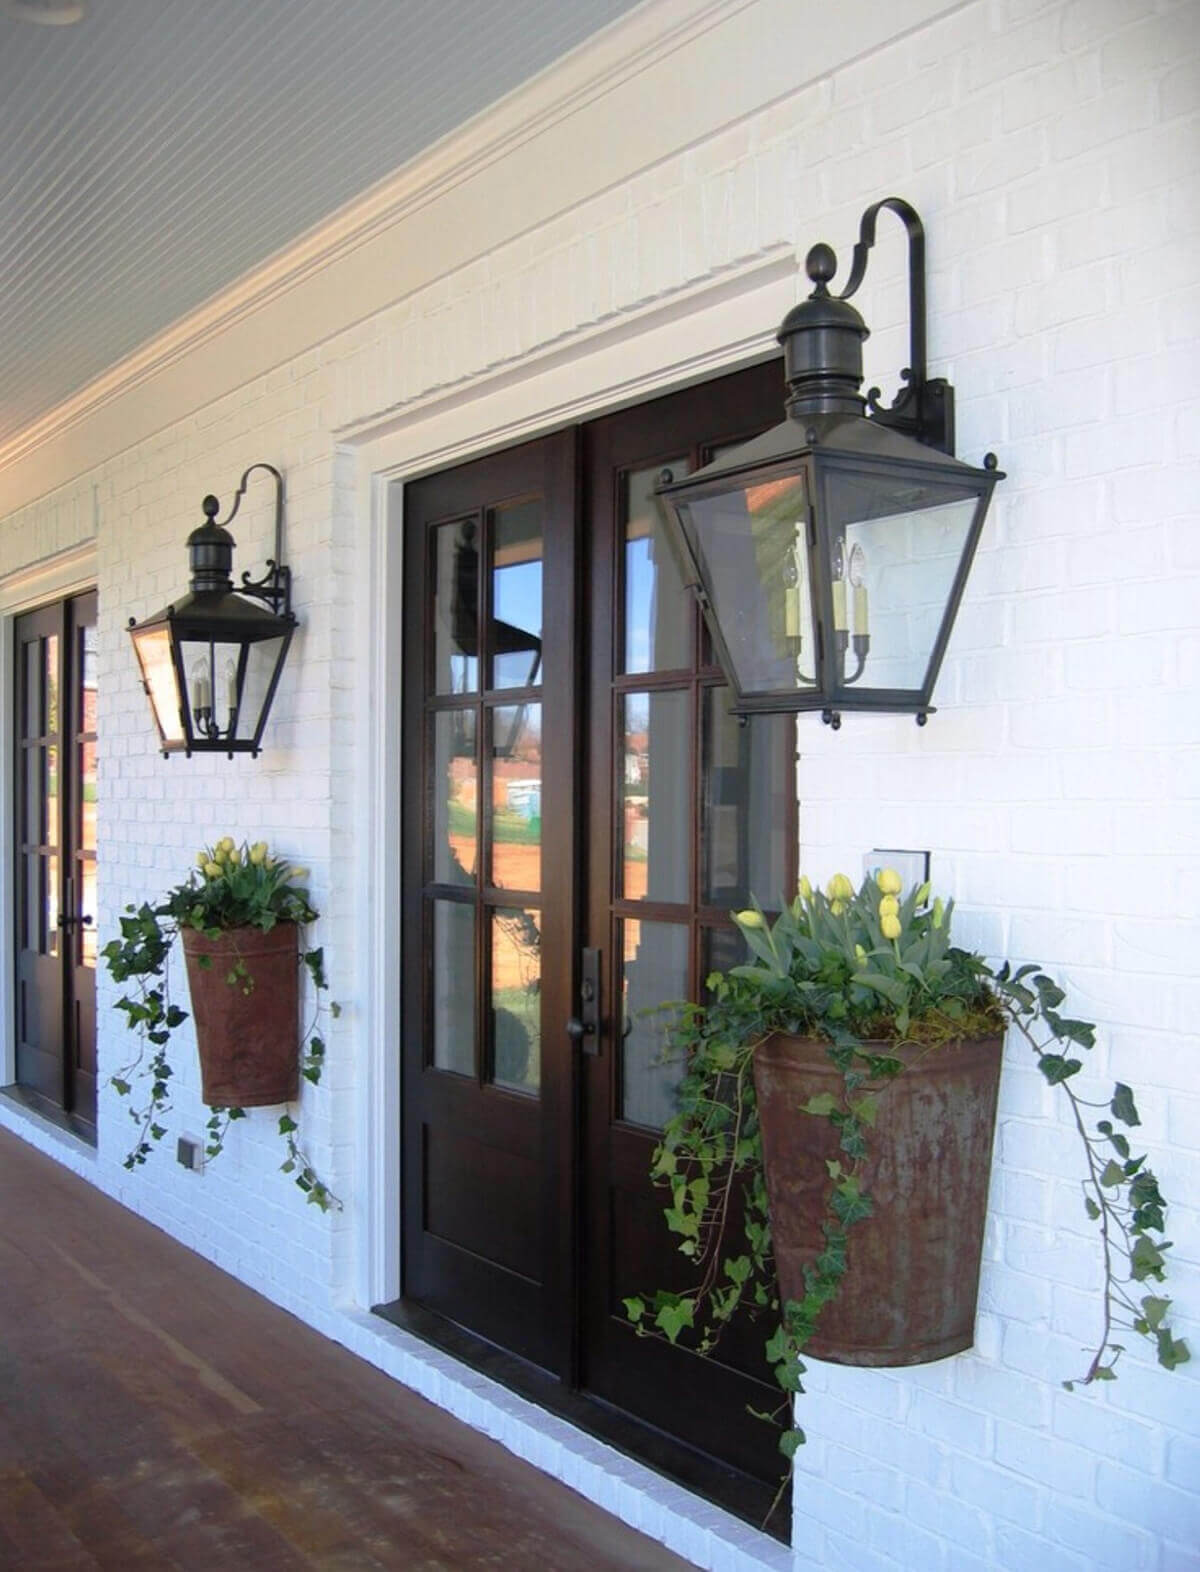  Antique Lanterns and Planters - rustic farmhouse front porch decor